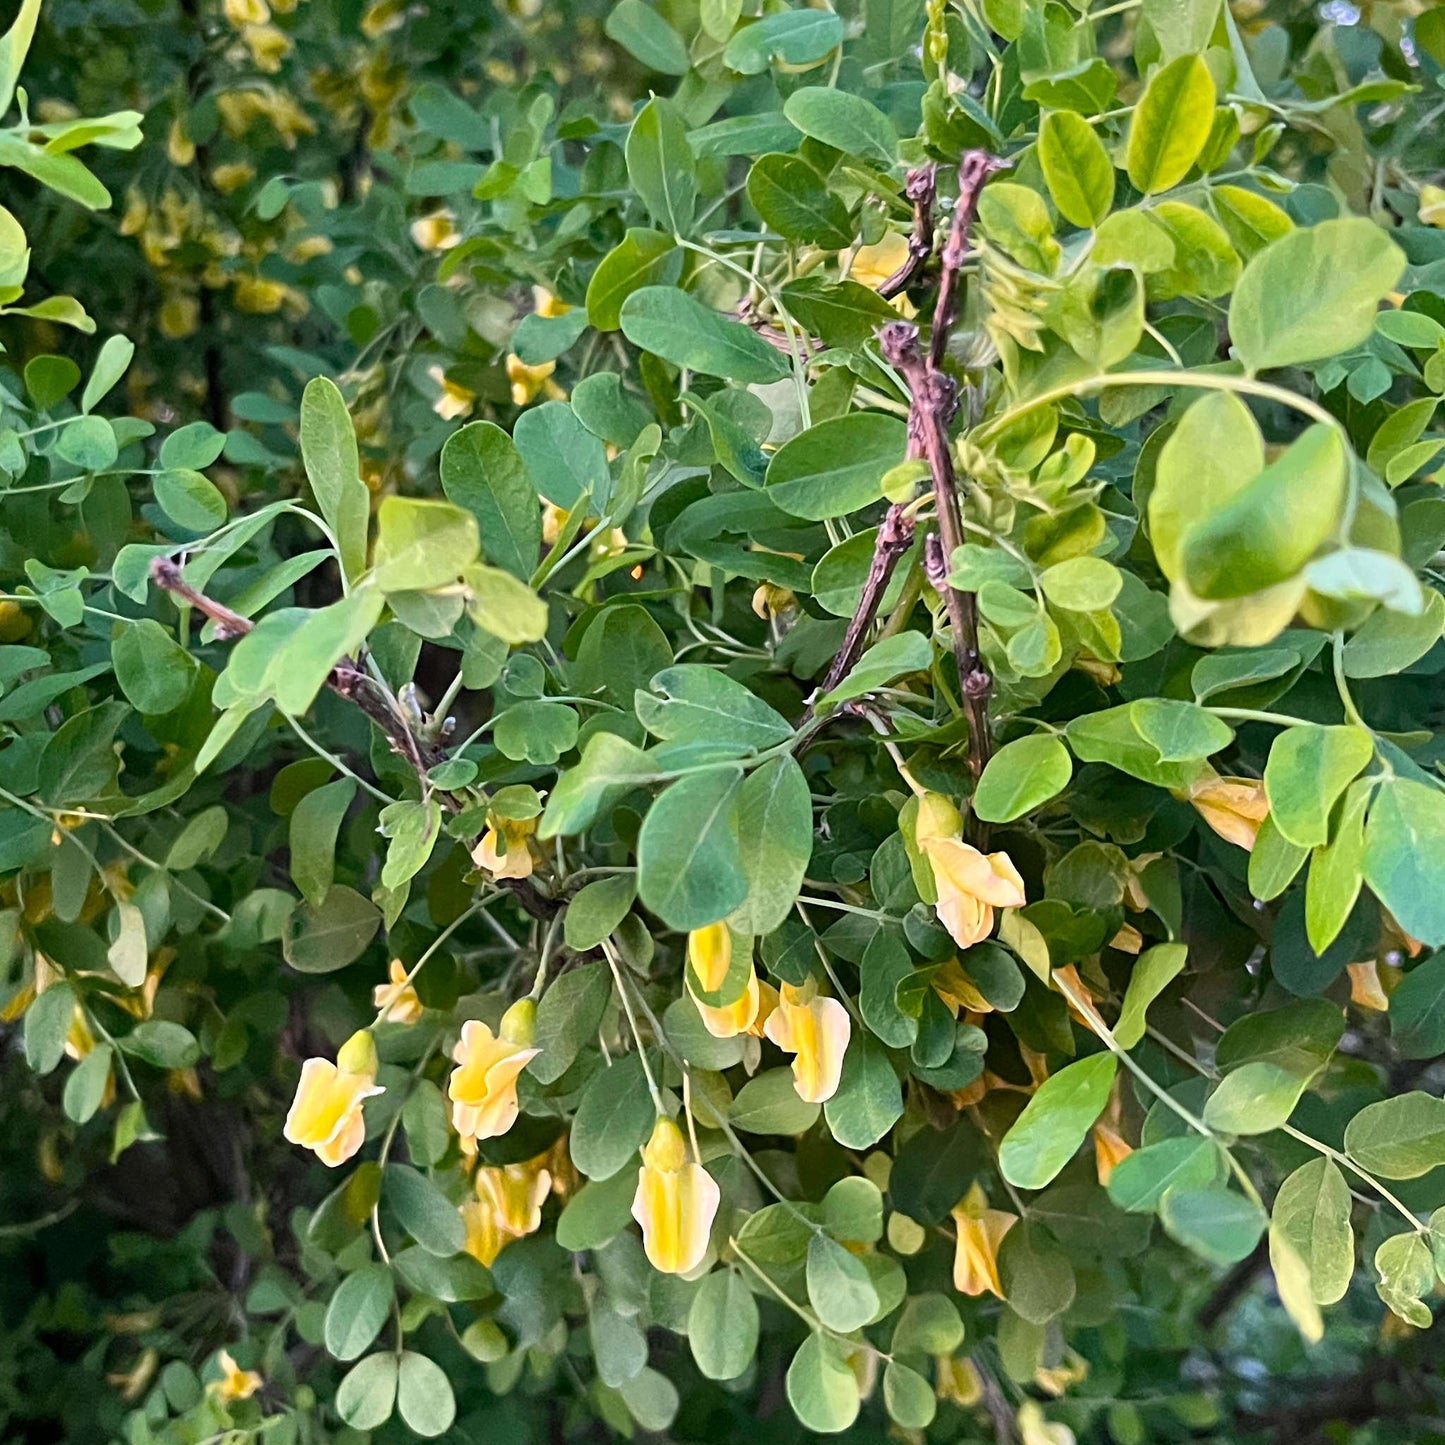 
                  
                    Semences de caraganier de sibérie - caragana arborescens
                  
                